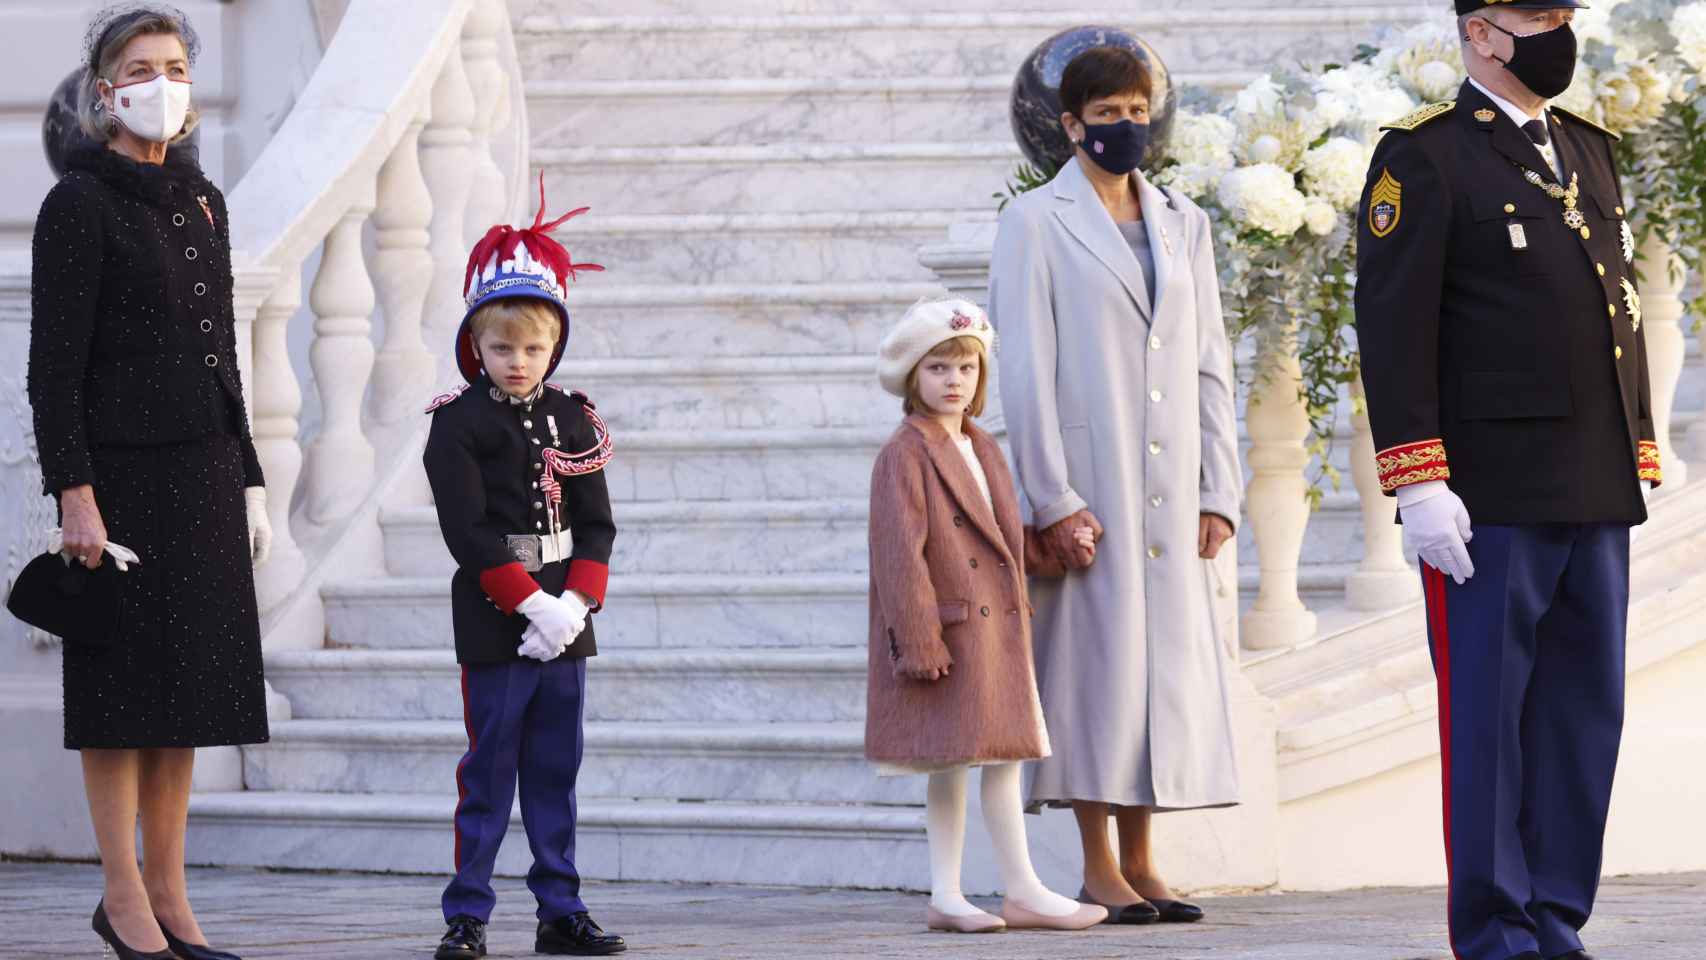 El príncipe Alberto ha presidido los actos junto a sus hermanas y sus hijos.